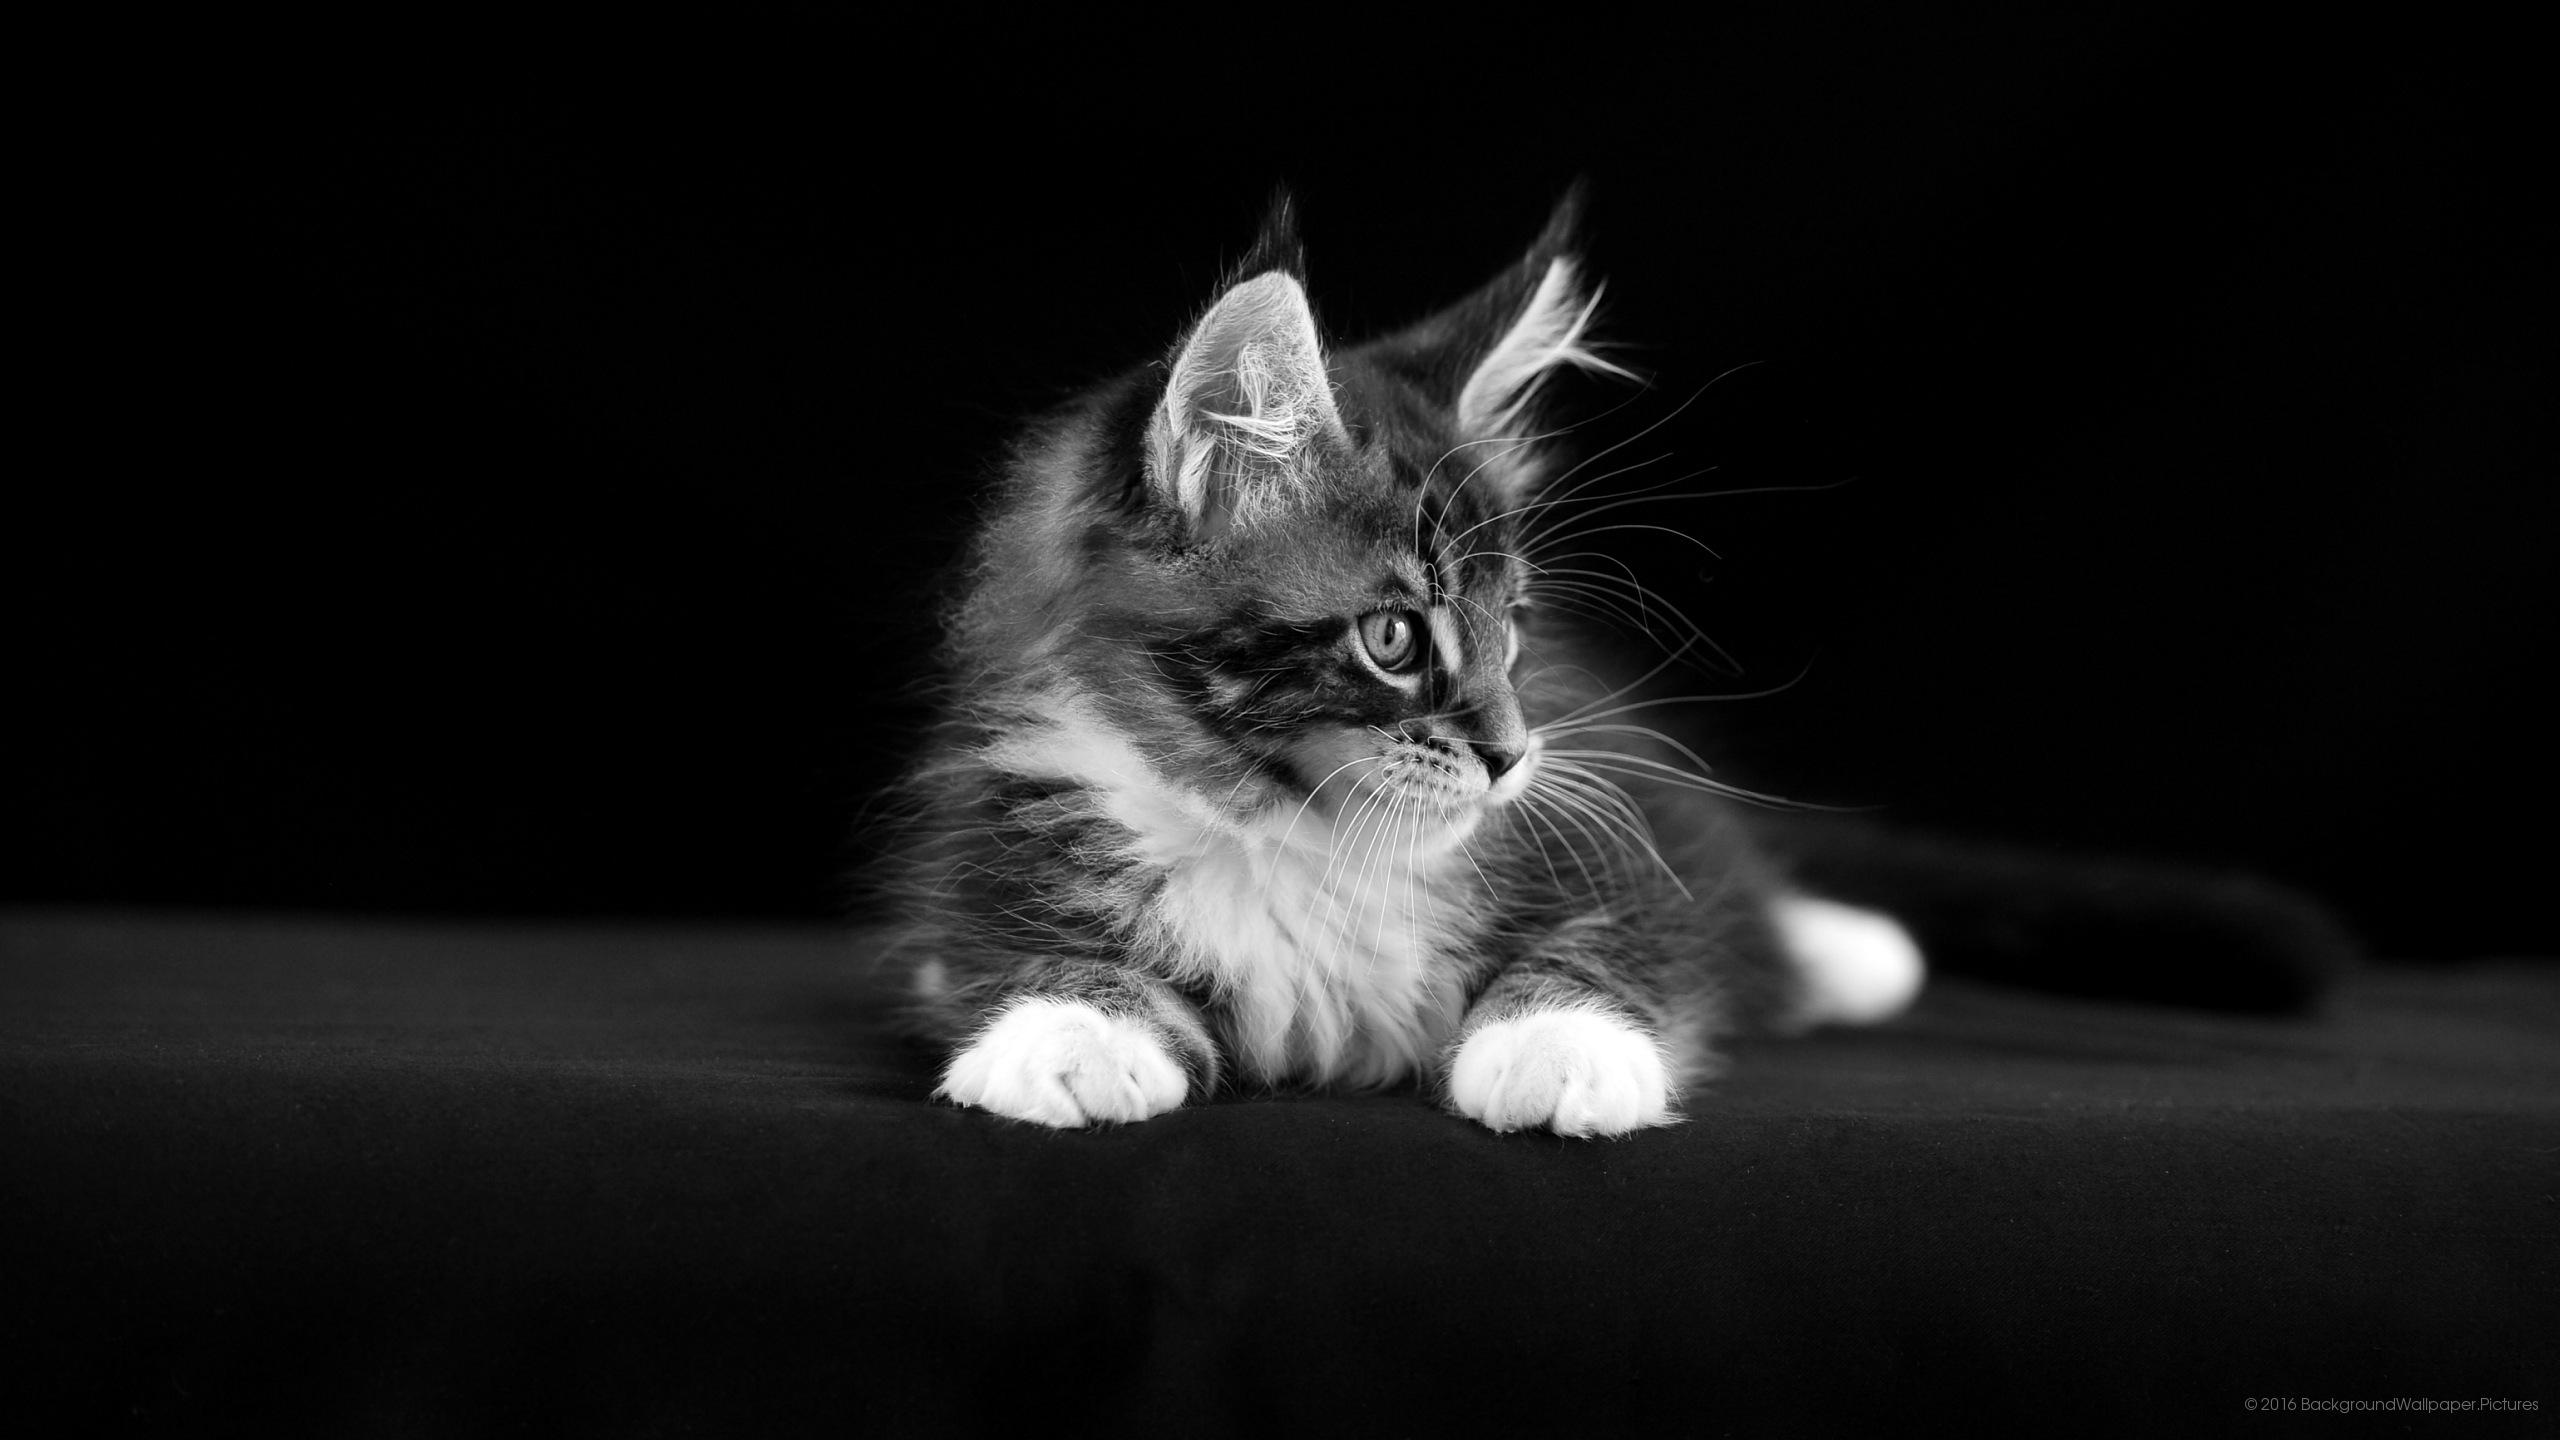 letv fond d'écran hd,chat,chats de petite à moyenne taille,moustaches,félidés,noir et blanc